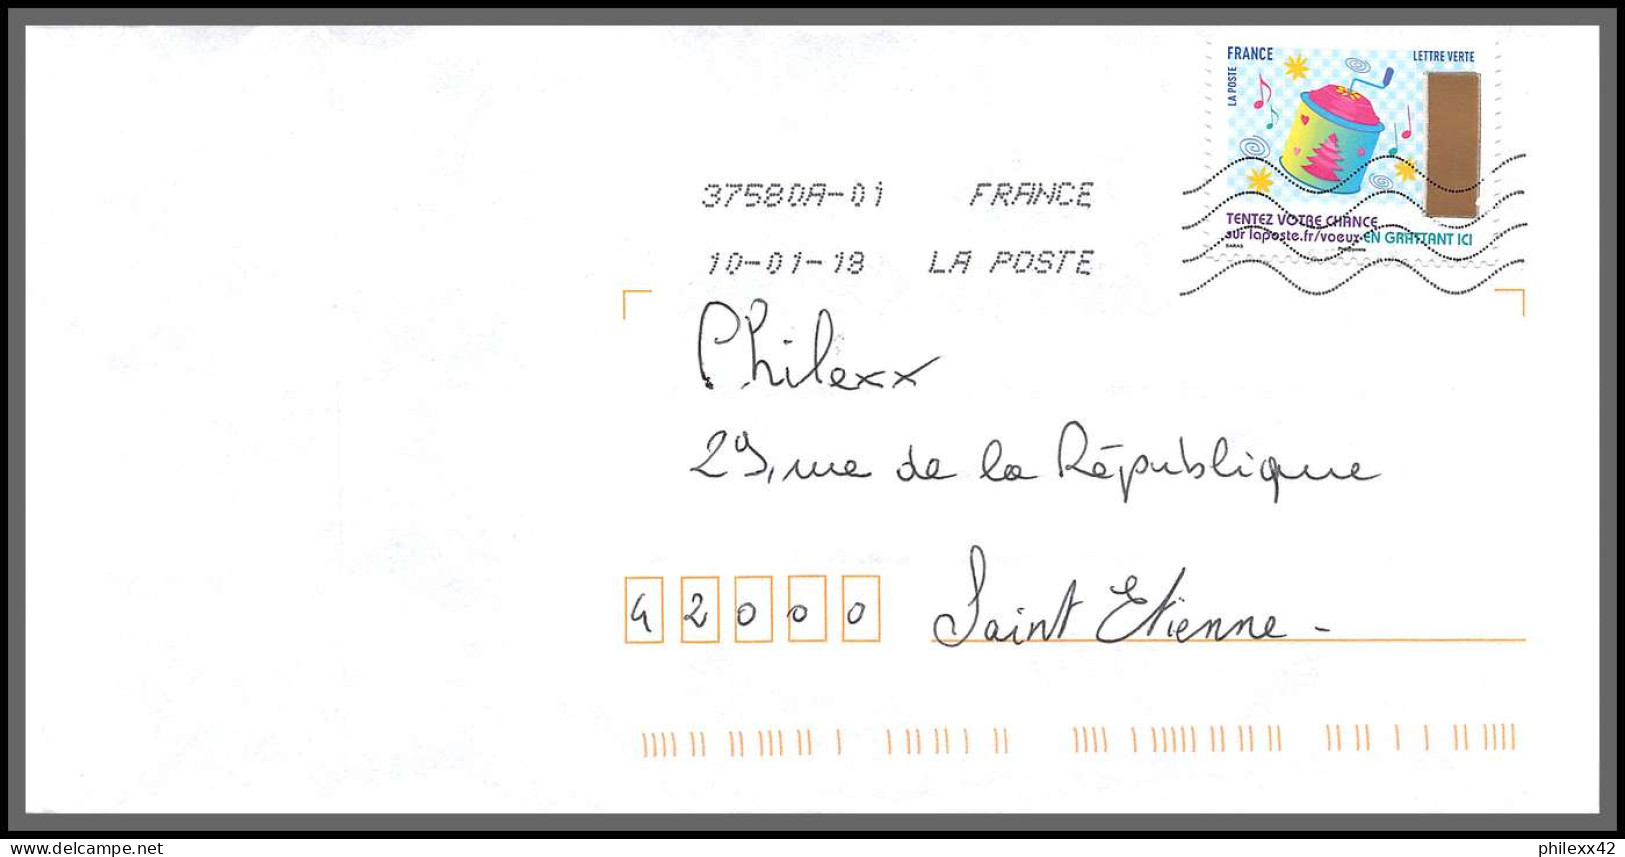 95889 - Lot De 15 Courriers Lettres Enveloppes De L'année 2018 Divers Affranchissements En EUROS - Covers & Documents